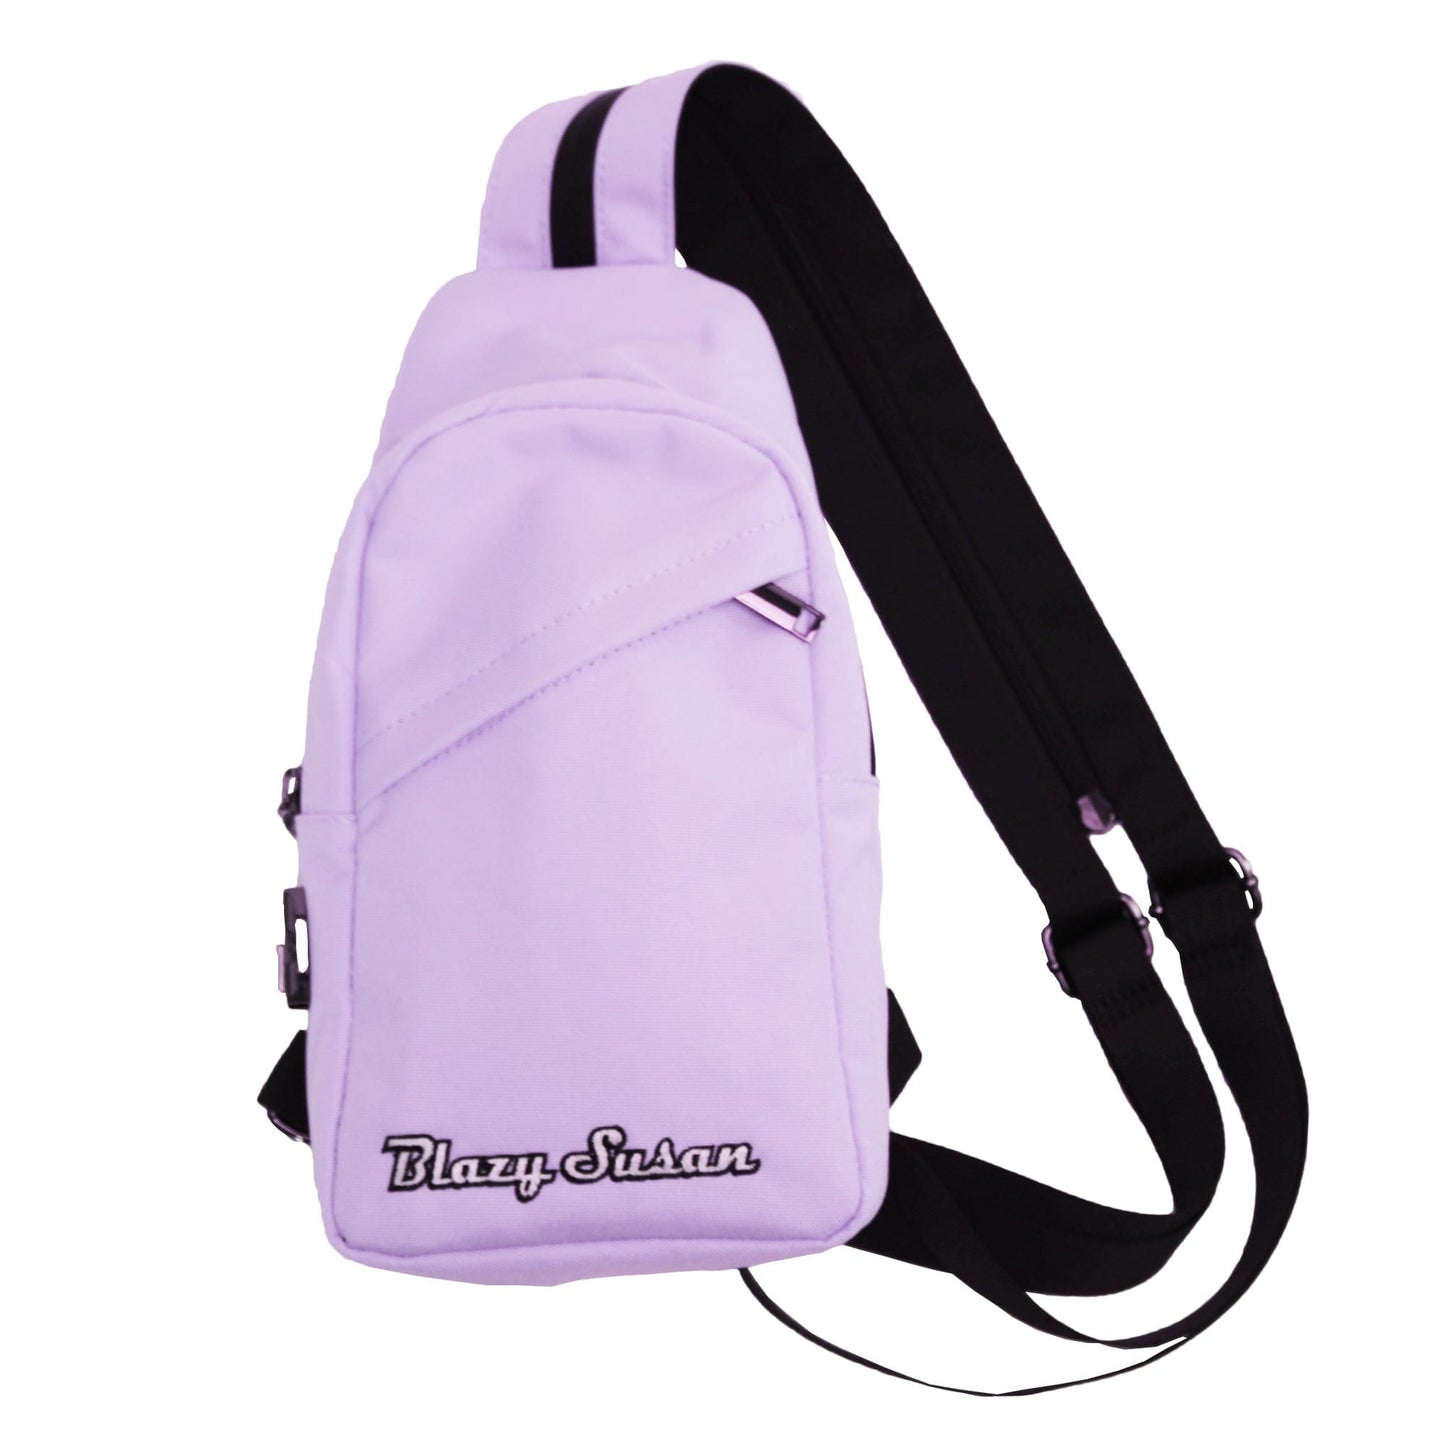 Blazy Susan Backpacks Over-The-Shoulder Bag - Purple Blazy Susan Backpacks